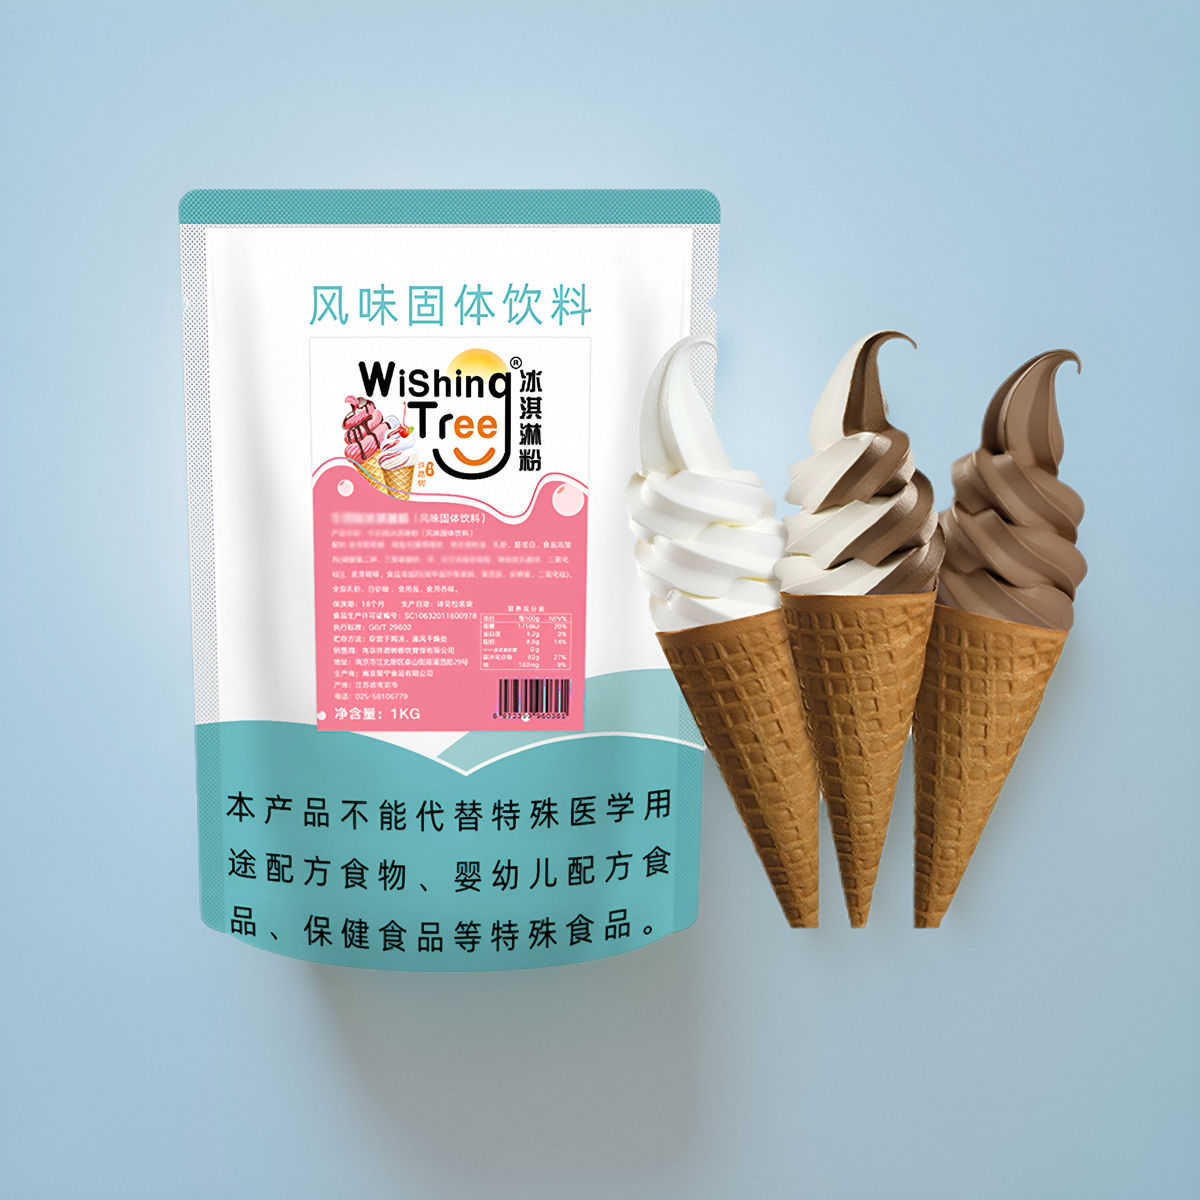 软冰淇淋粉商用雪糕粉自制家用 1公斤装冰激凌粉甜筒冰淇淋机原料